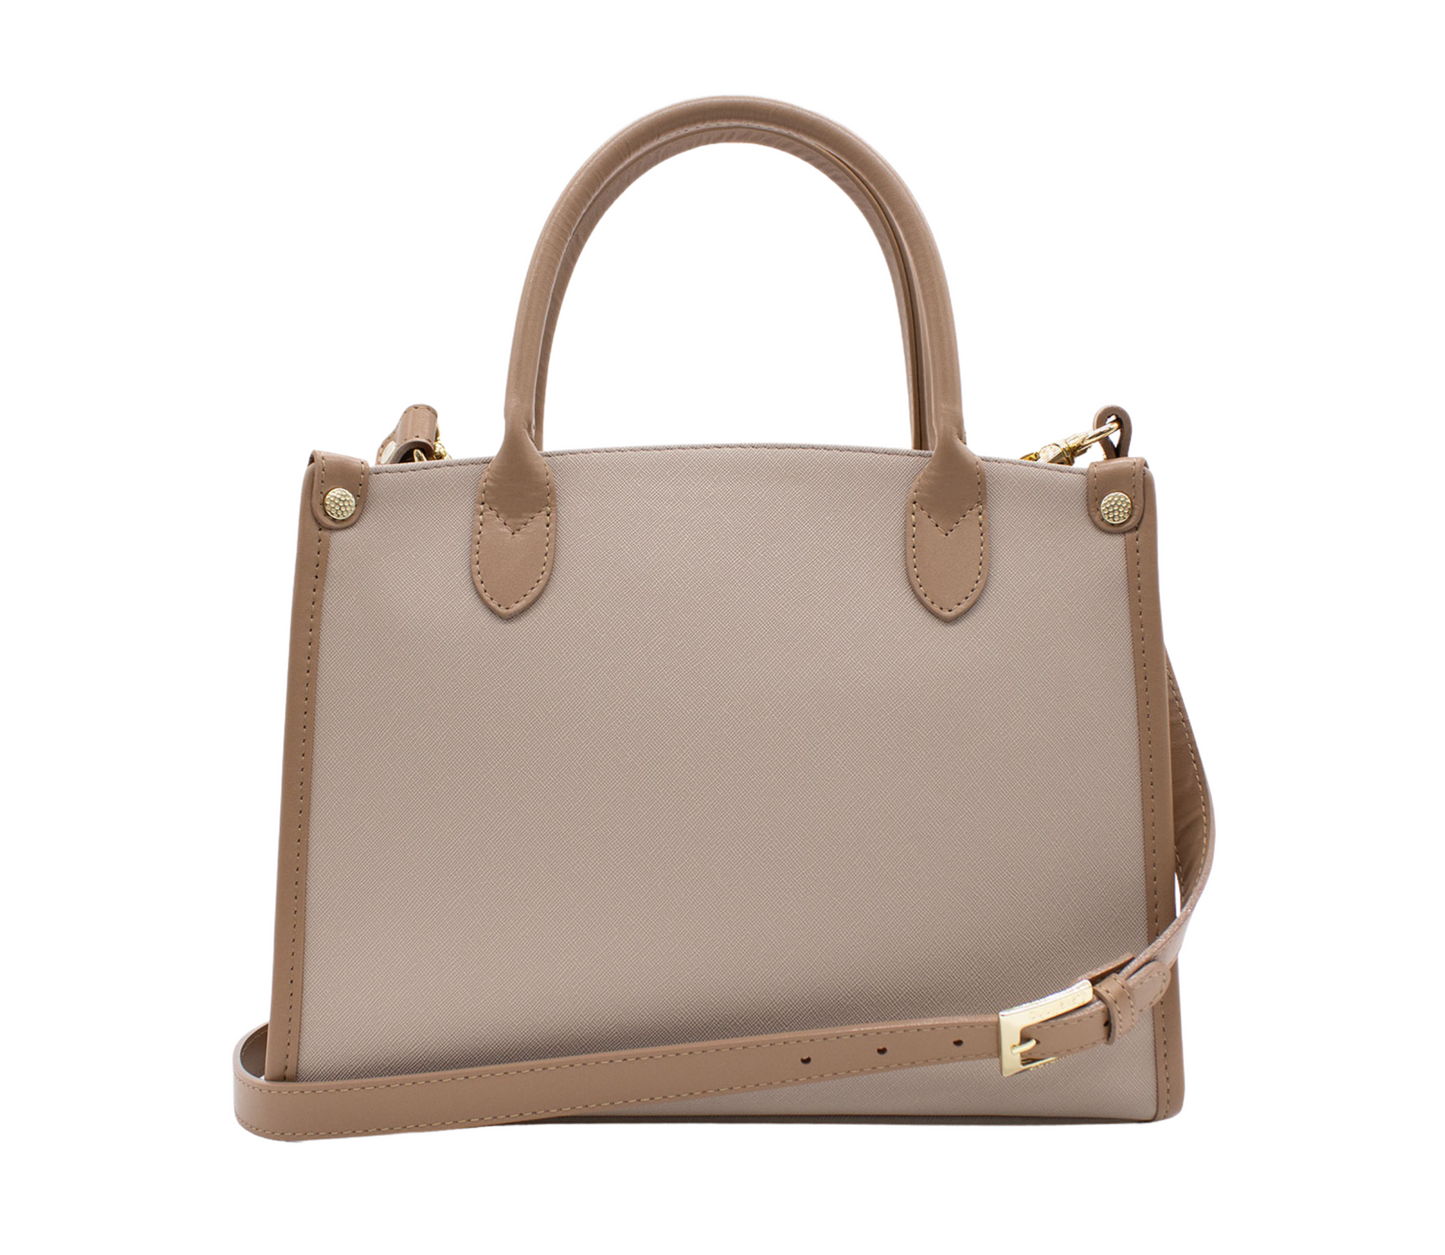 Cavalinho Allegro Handbag - Beige / White / Pink - 18480480.07_P03